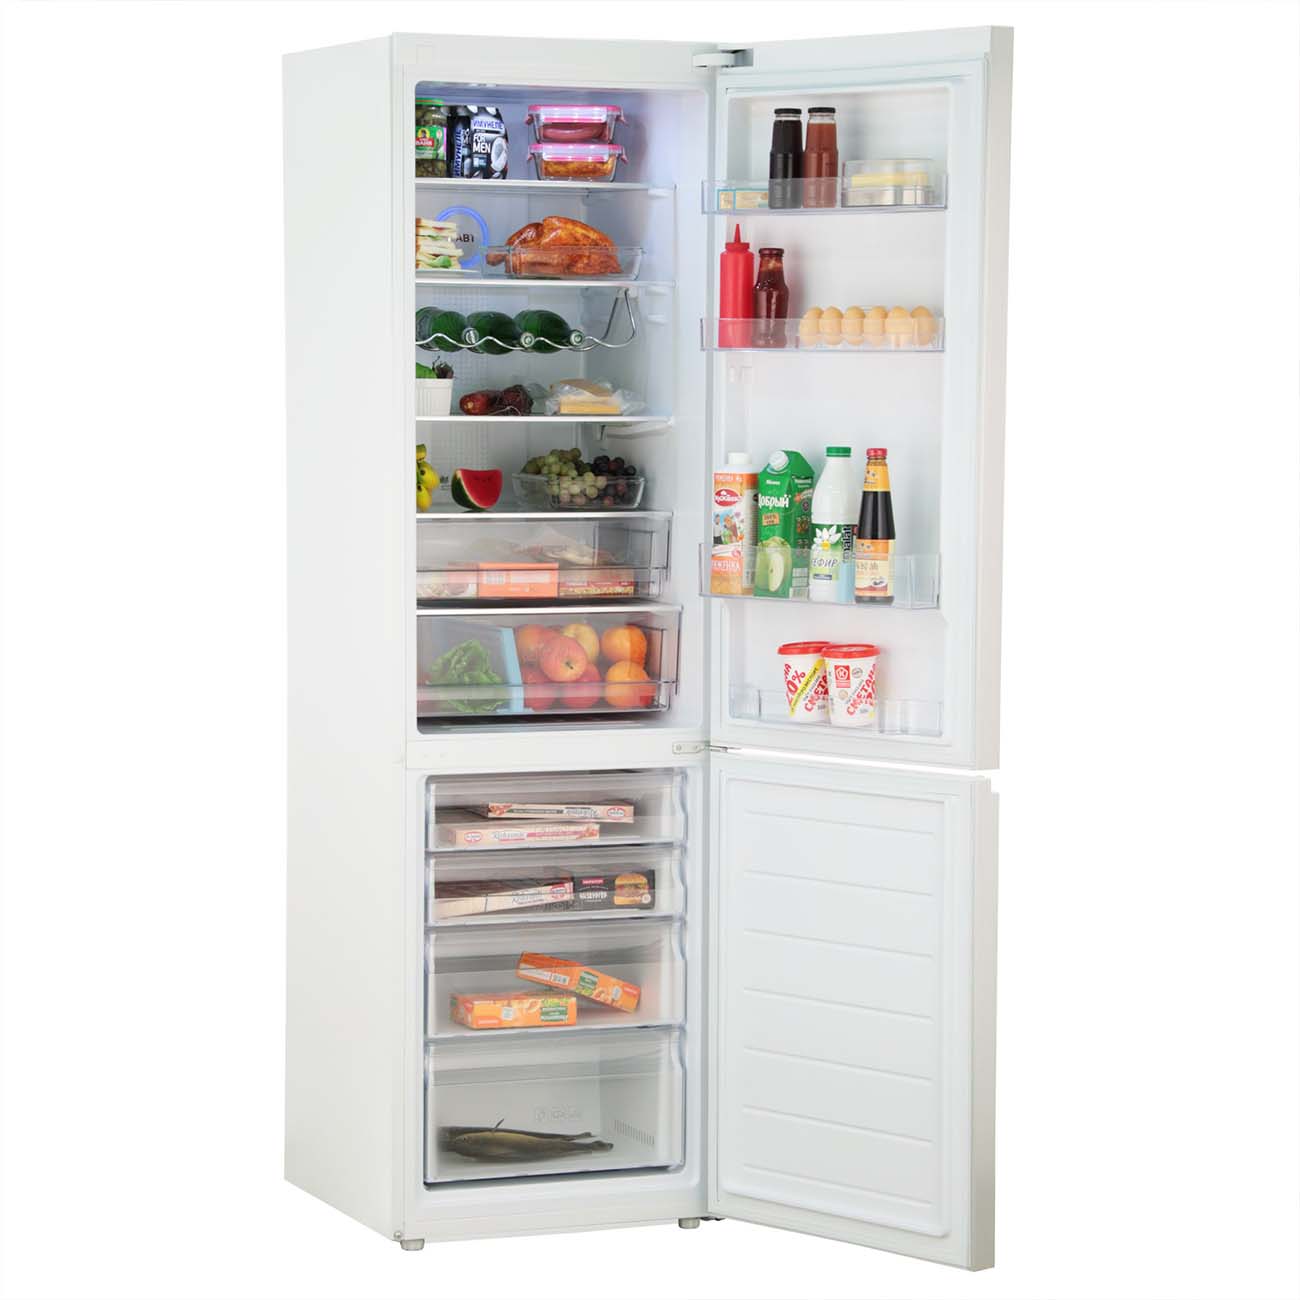 Отзывы о холодильниках haier. Холодильник Haier c2f637cgwg. Холодильник Haier c2f637cgwg белый. Хаер холодильники 637 со стеклом белый. Холодильник Хайер 637.